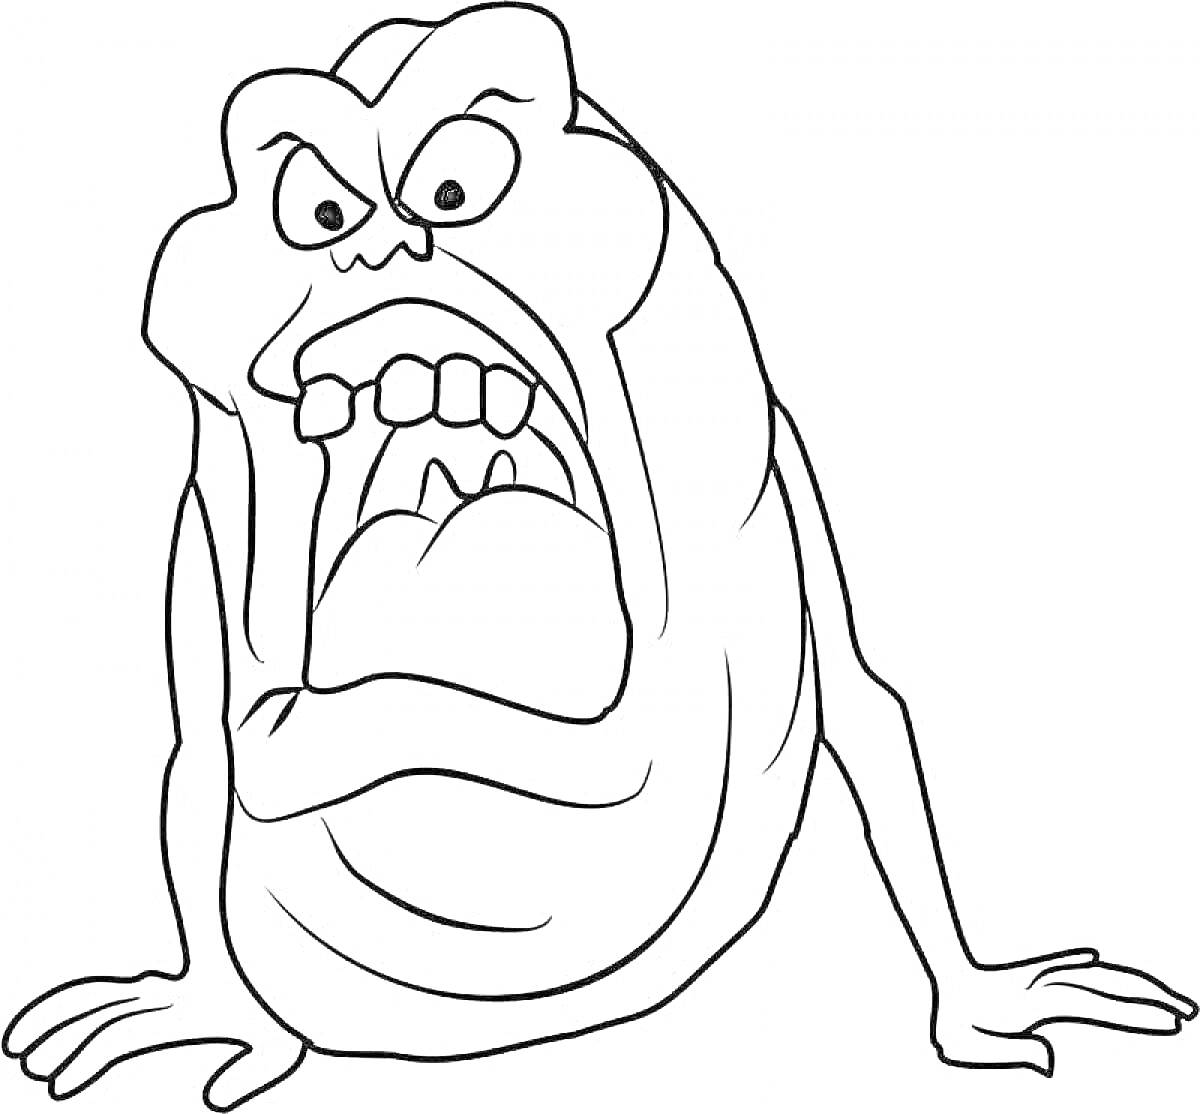 Раскраска лизун с гневным выражением лица, показан в позе, сидя на полу, с открытым ртом и зубами, с вытянутыми руками